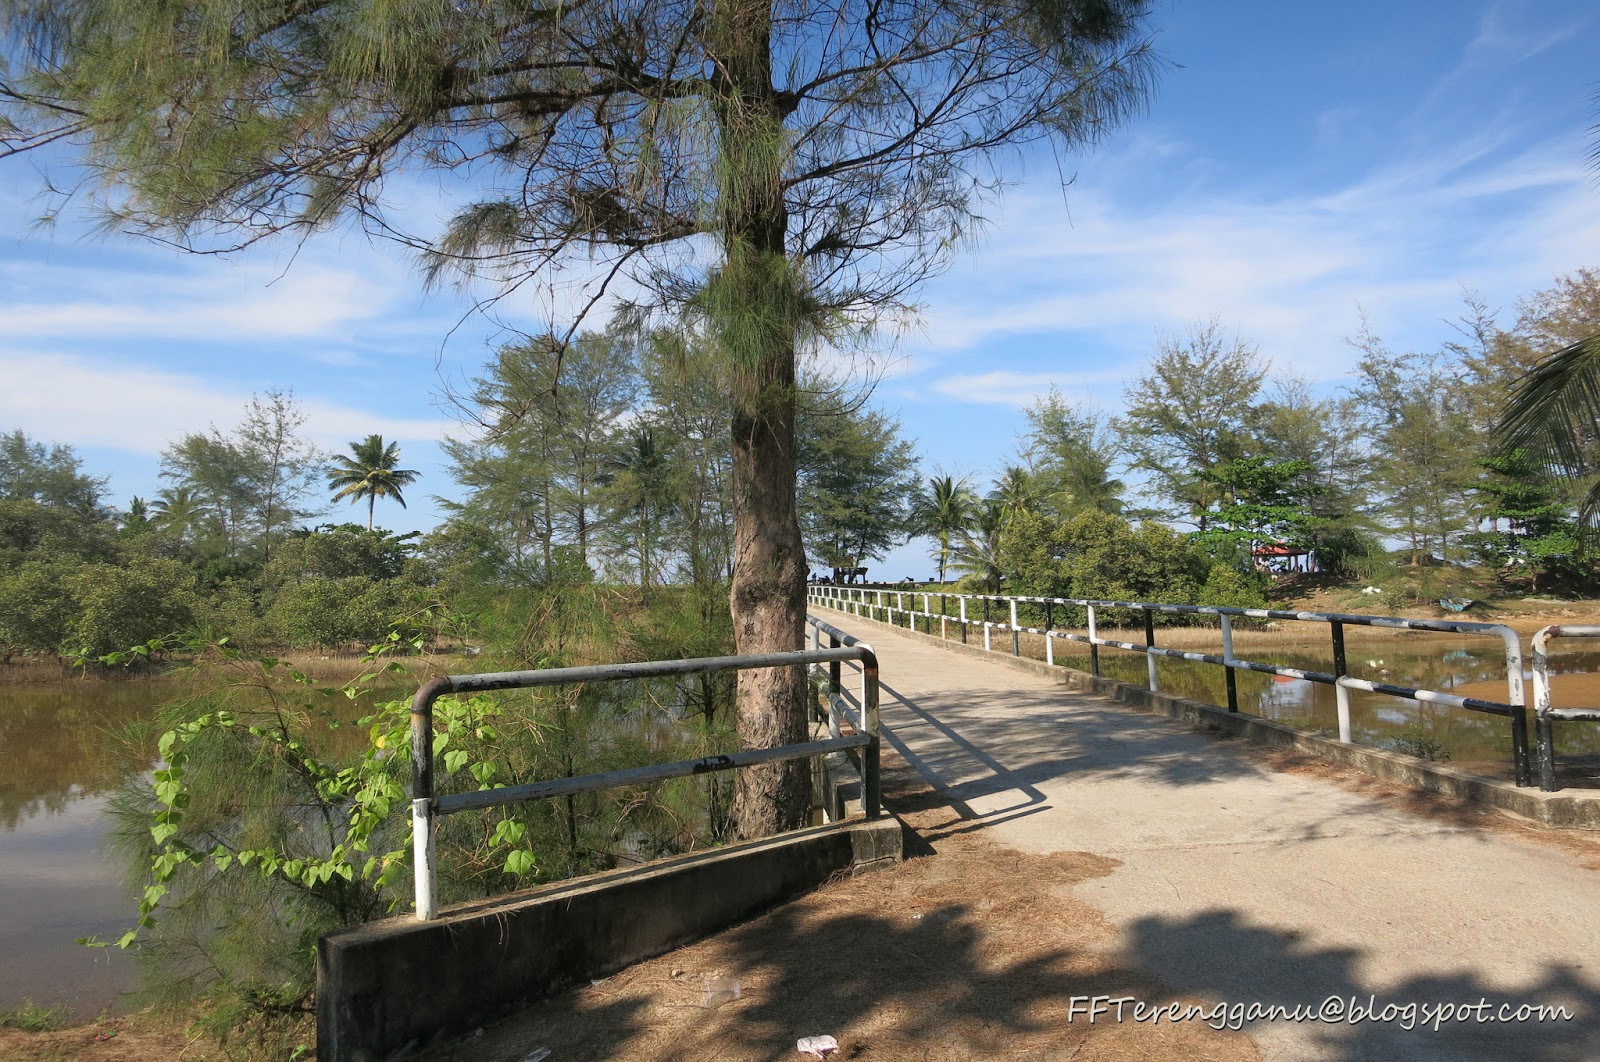 Jomm Terengganu Selalu...: Taman Bandar Marang, Marang